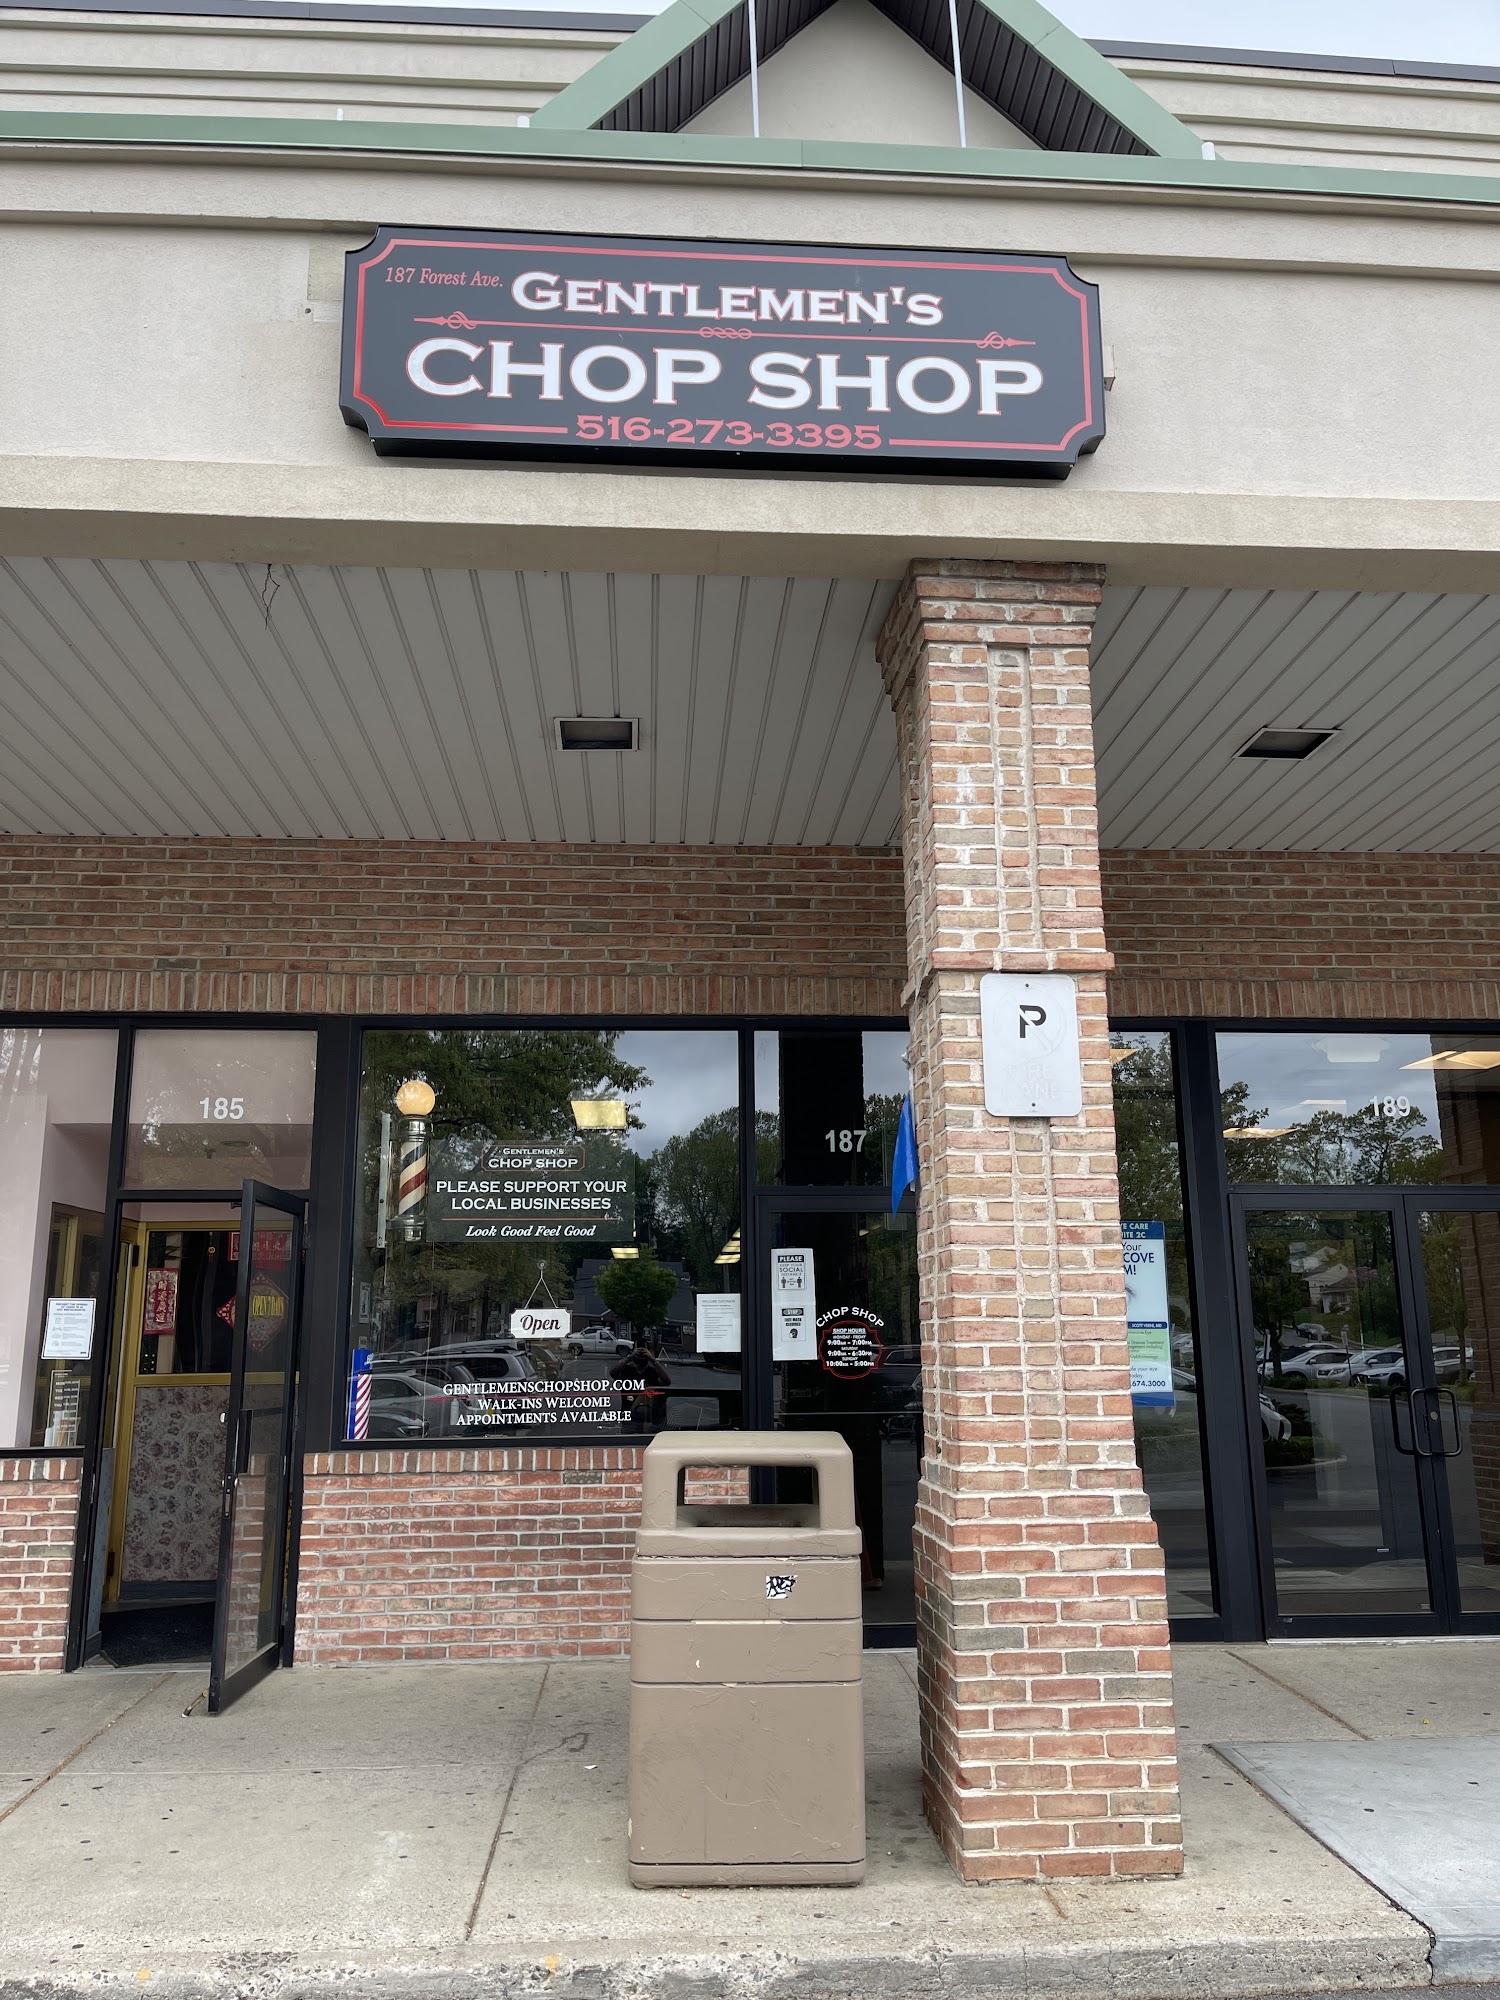 Gentlemen’s chop shop